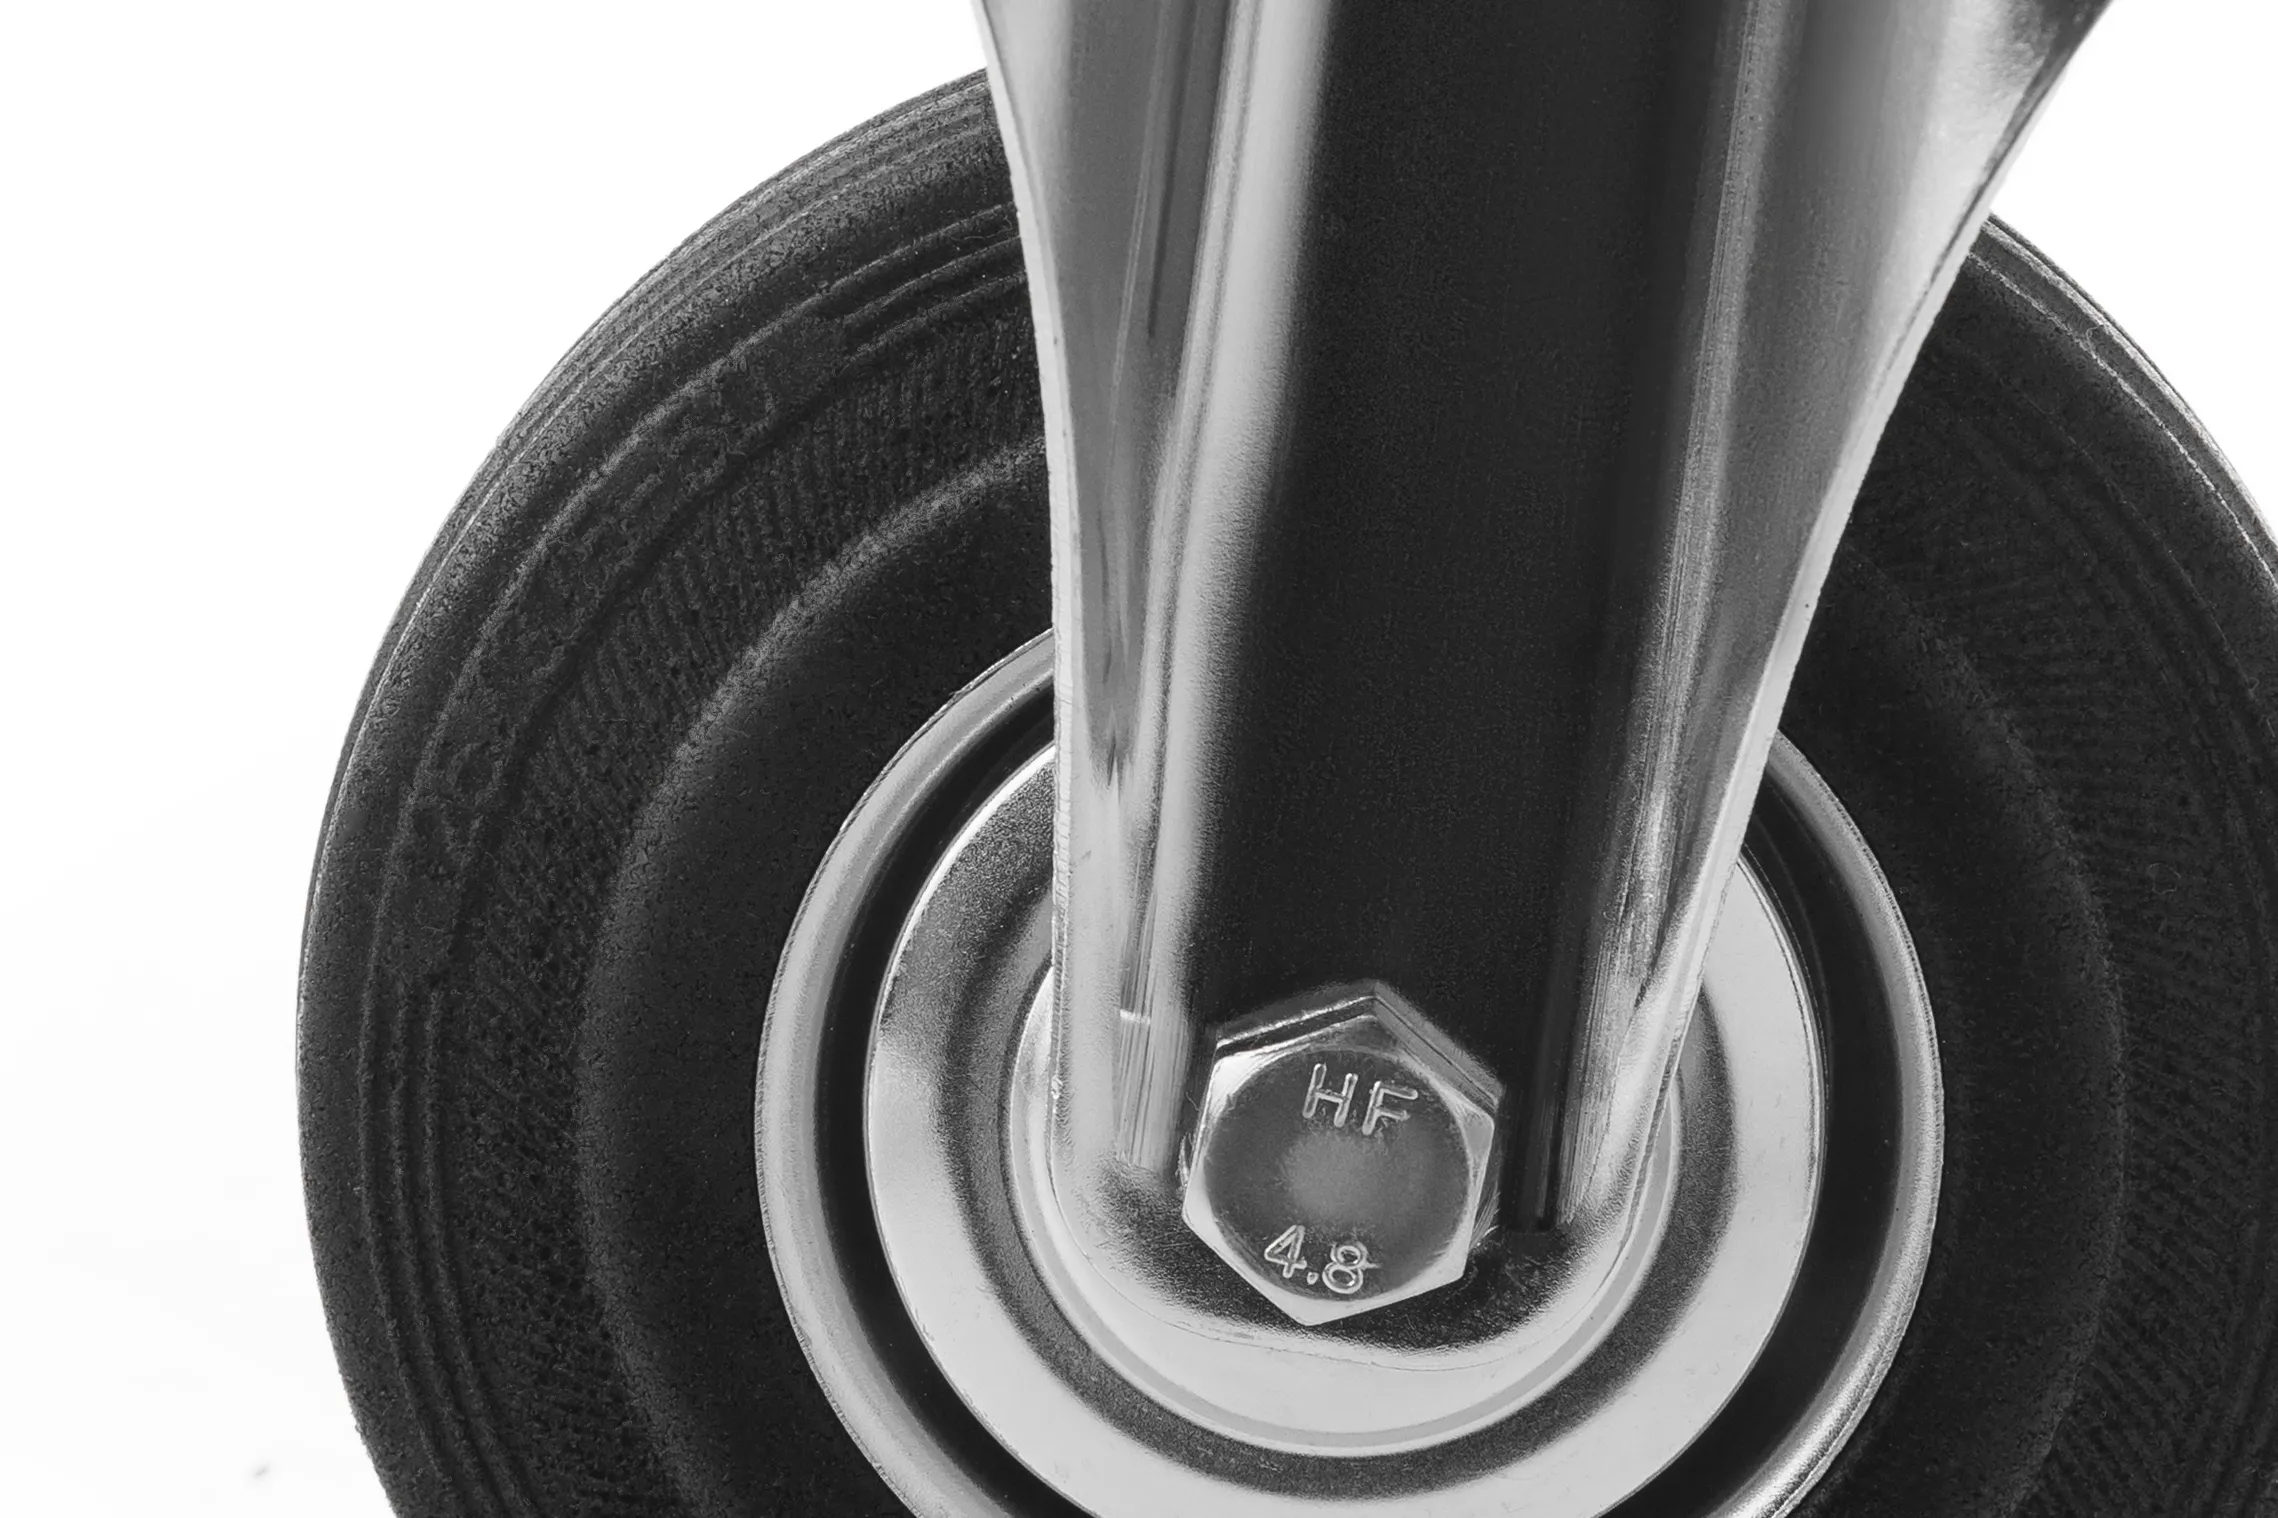 Промышленное колесо, диаметр 125мм, крепление - неповоротная площадка, черная резина, роликовый подшипник - FC 54